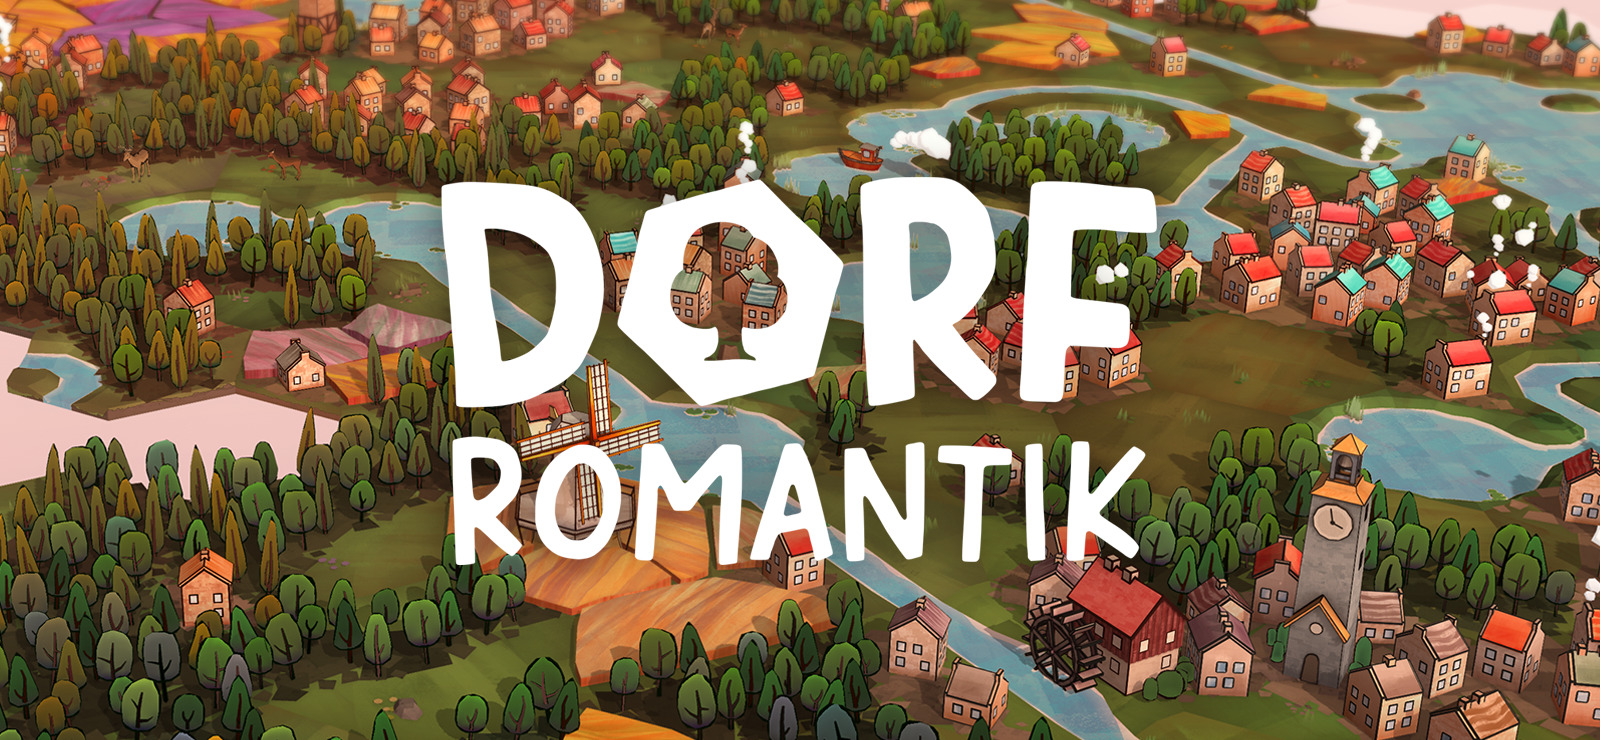 Dorfromantik має український текст